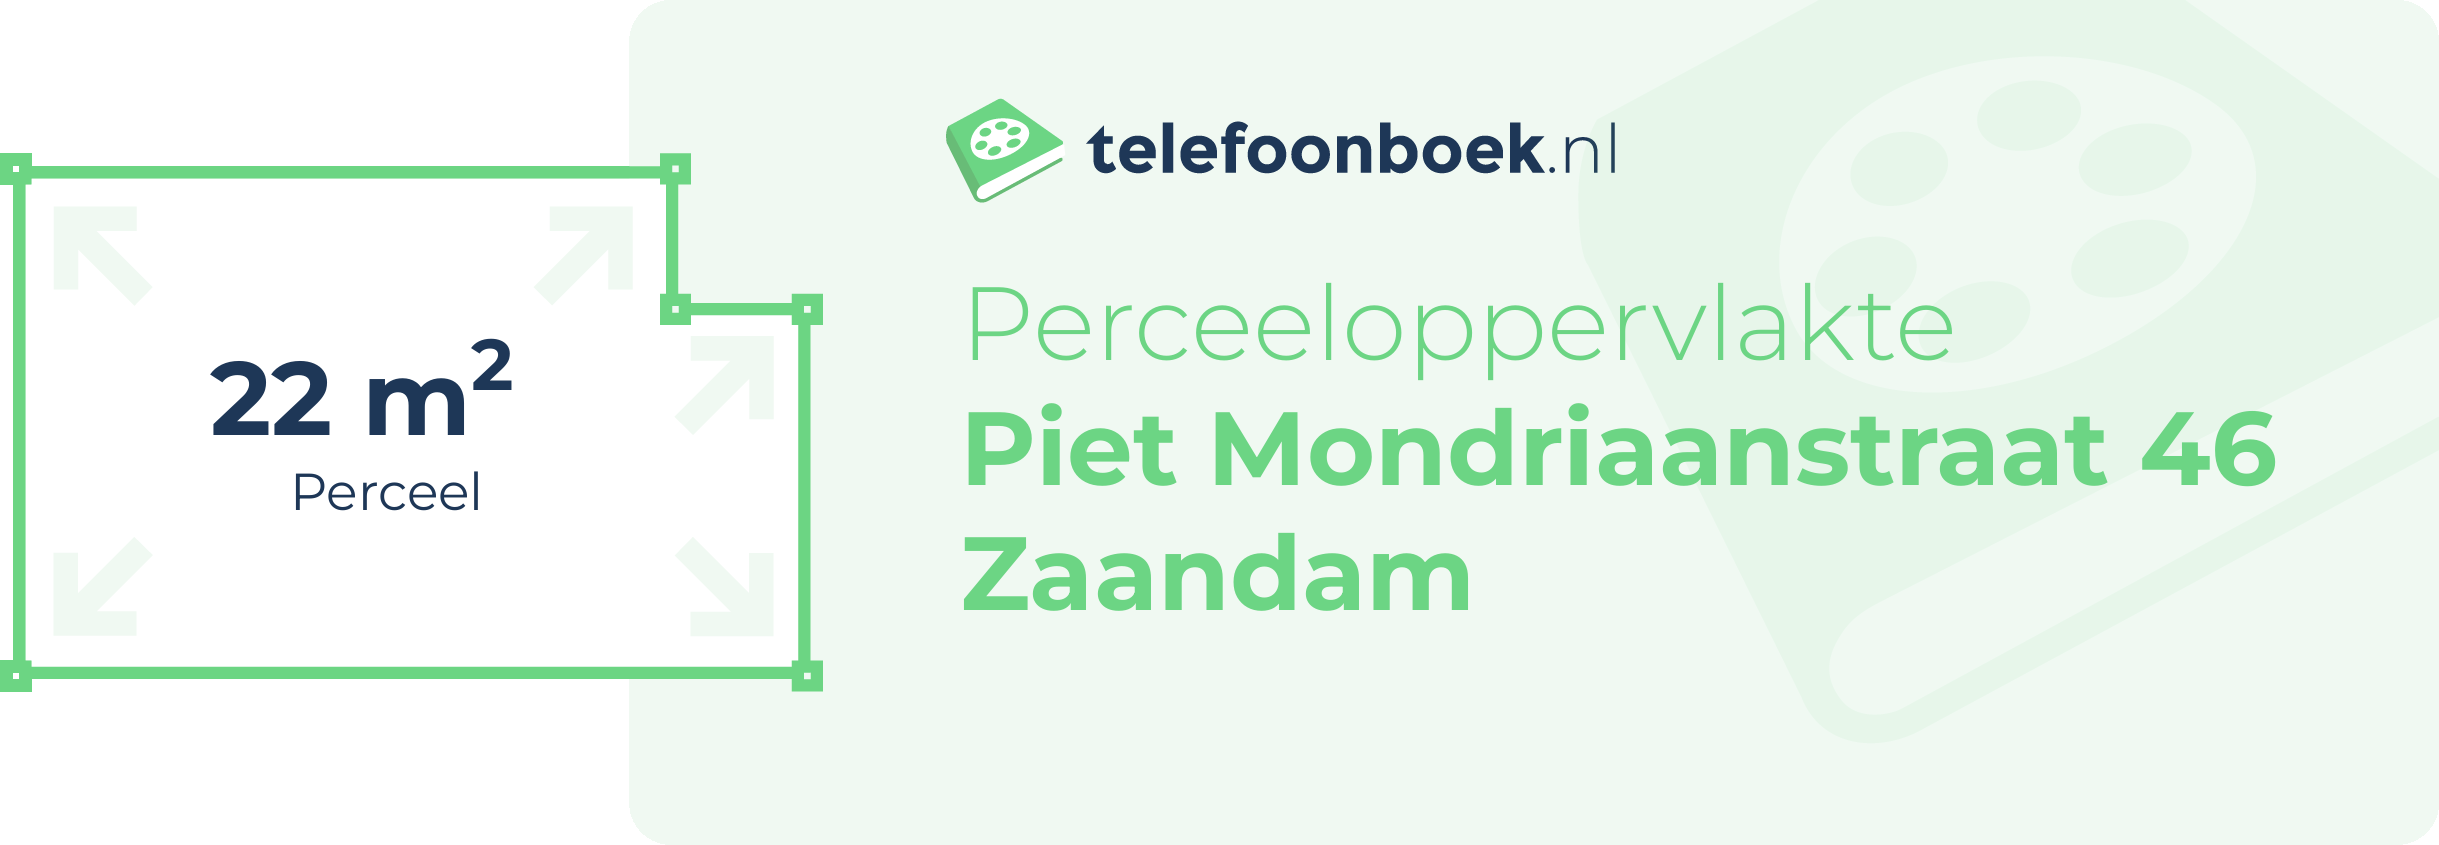 Perceeloppervlakte Piet Mondriaanstraat 46 Zaandam